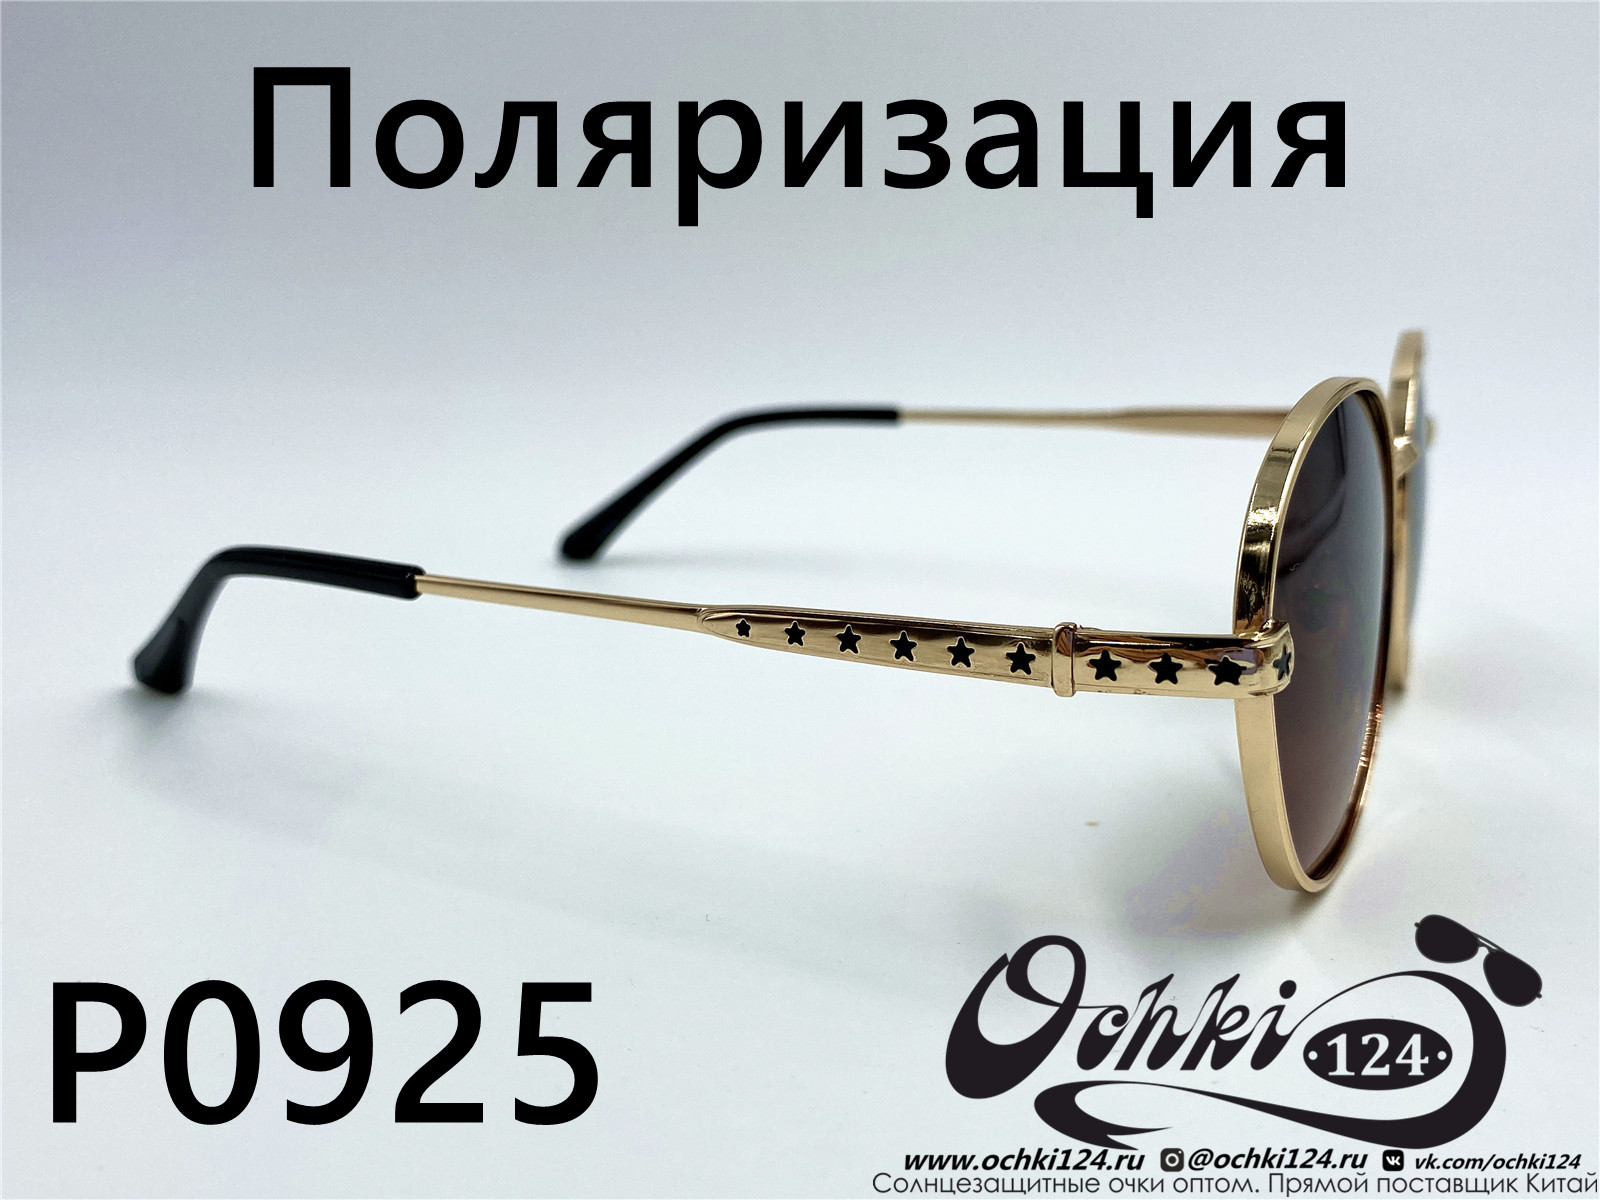  Солнцезащитные очки картинка 2022 Женские Поляризованные Круглые  P0925-7 